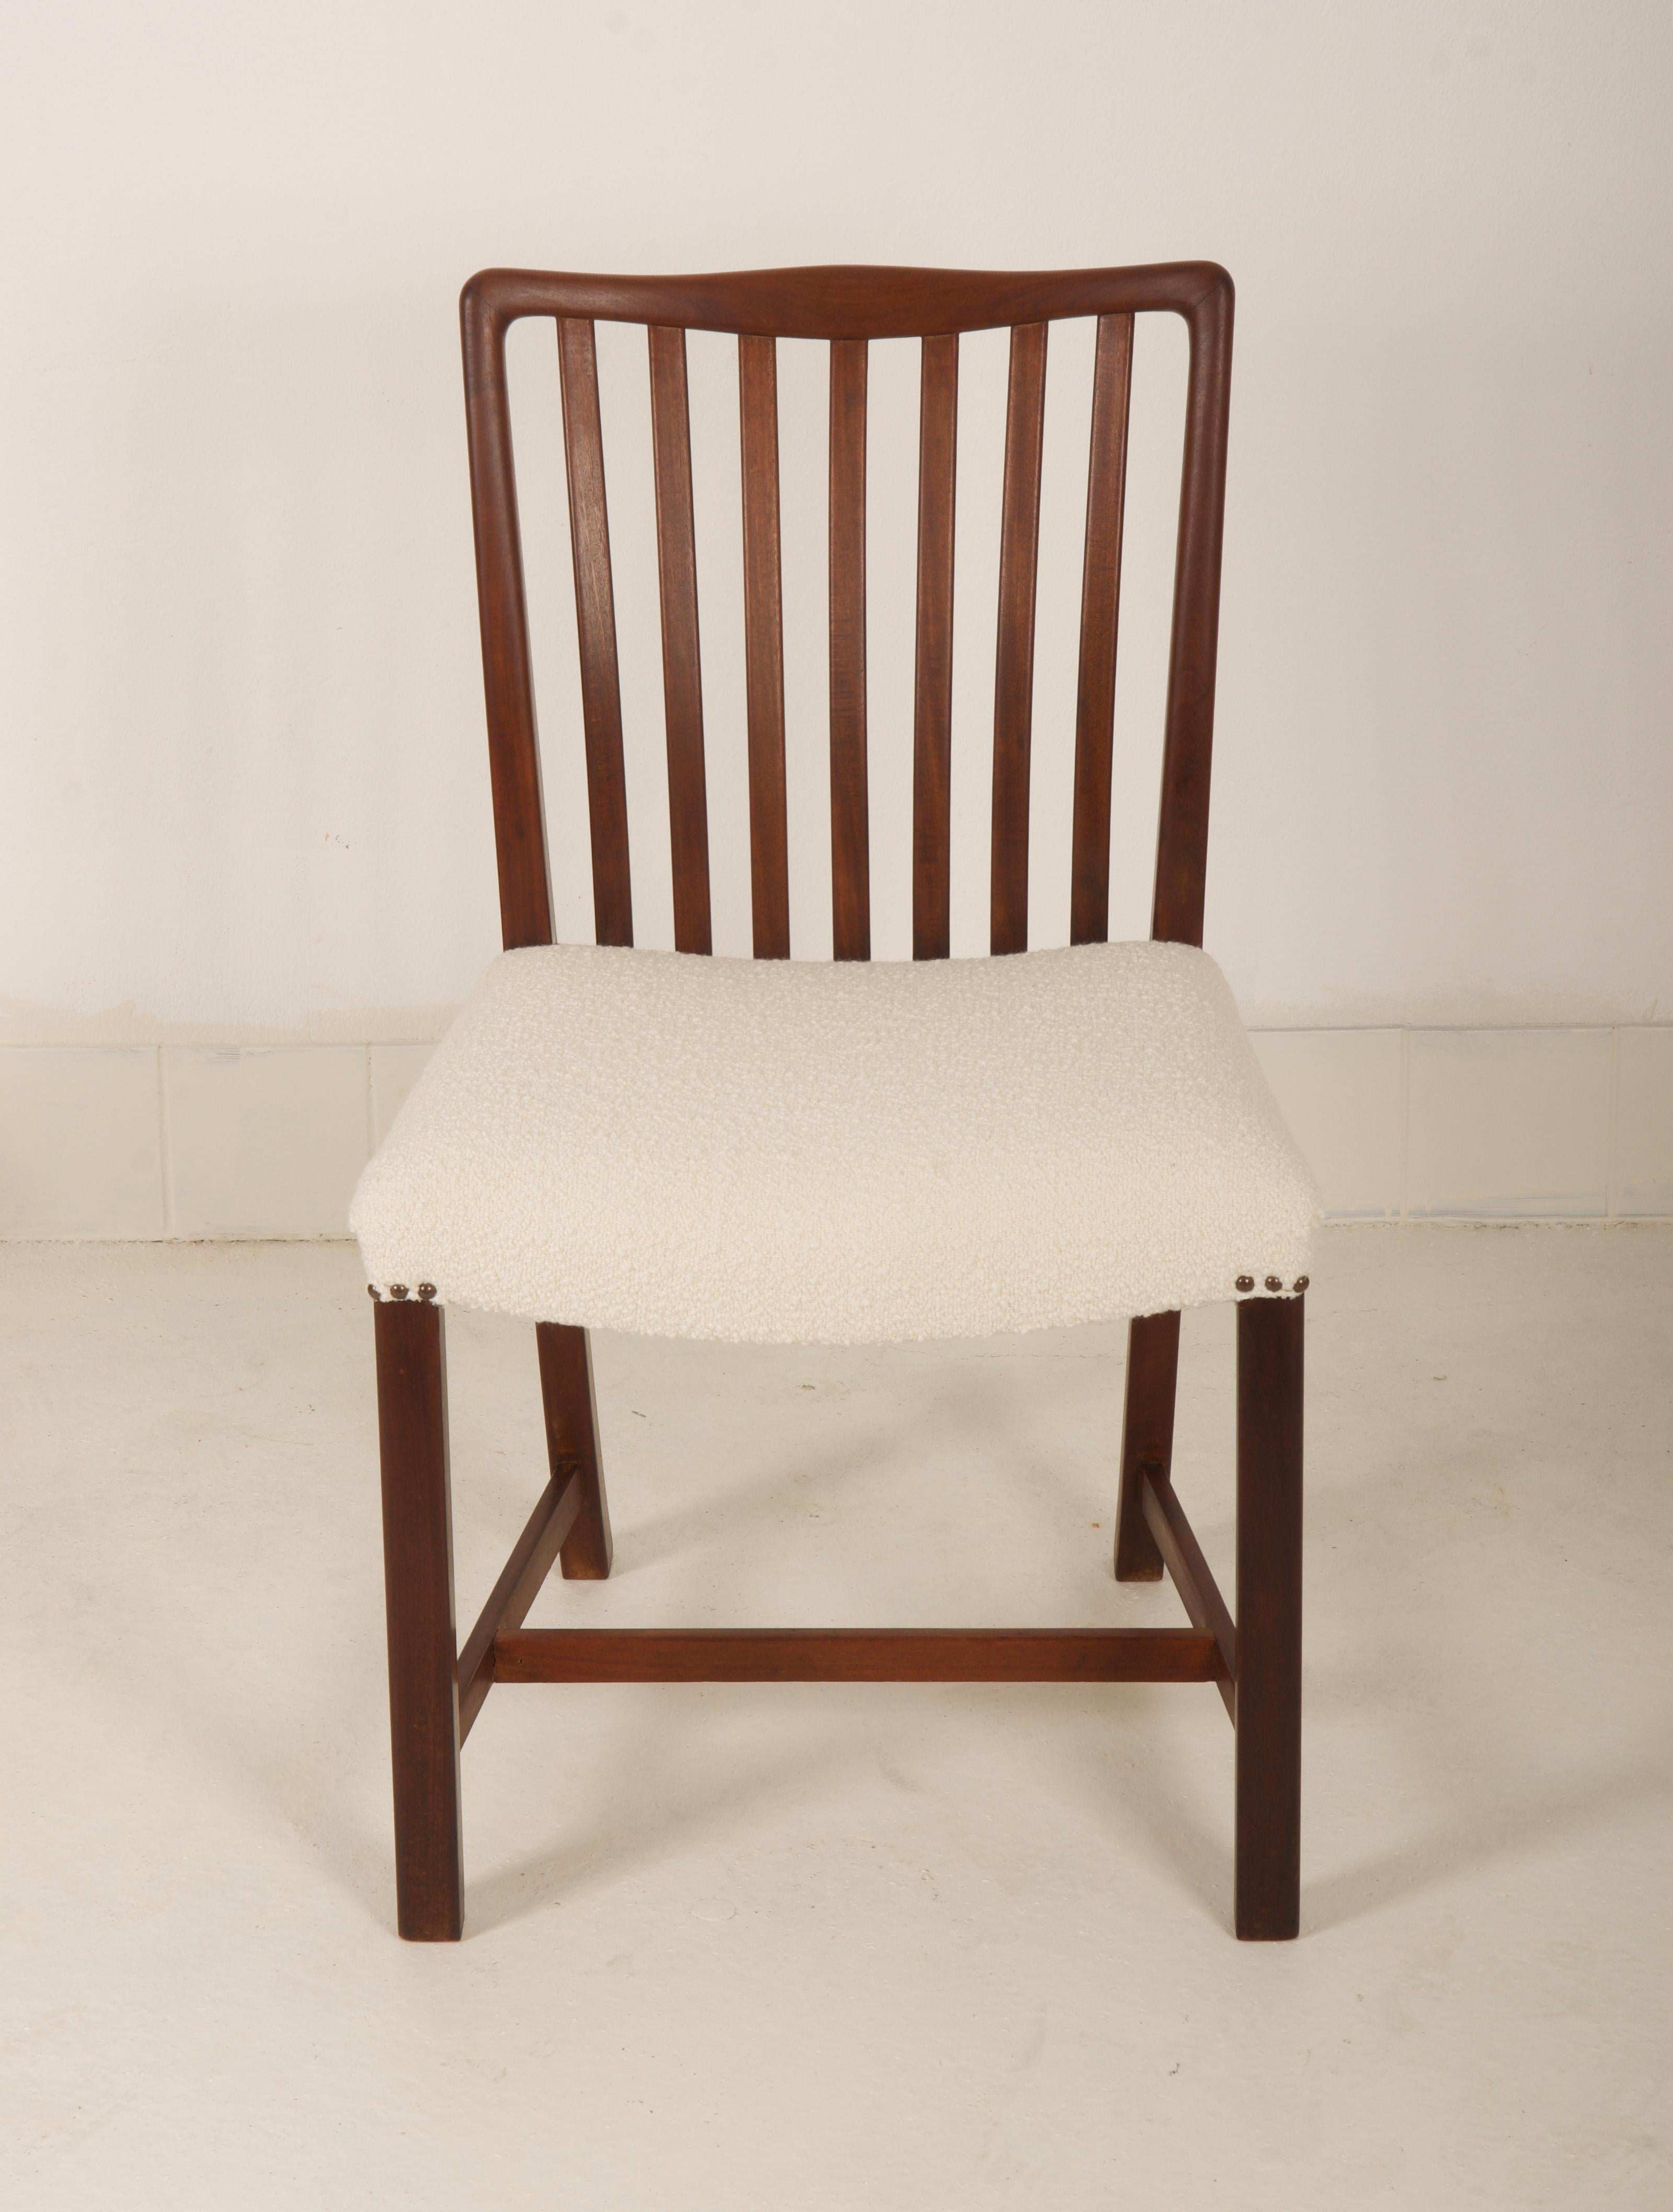 Sechs Stühle, hergestellt von Sondergaard Mobler in Dänemark in den späten 1940er Jahren.
Der Rahmen ist aus Mahagoni, nur eine restaurierte der Rest Lieferzeit 3-4 Wochen. 
Polsterung mit einem anderen Stoff auf Anfrage möglich.

Maße: H.